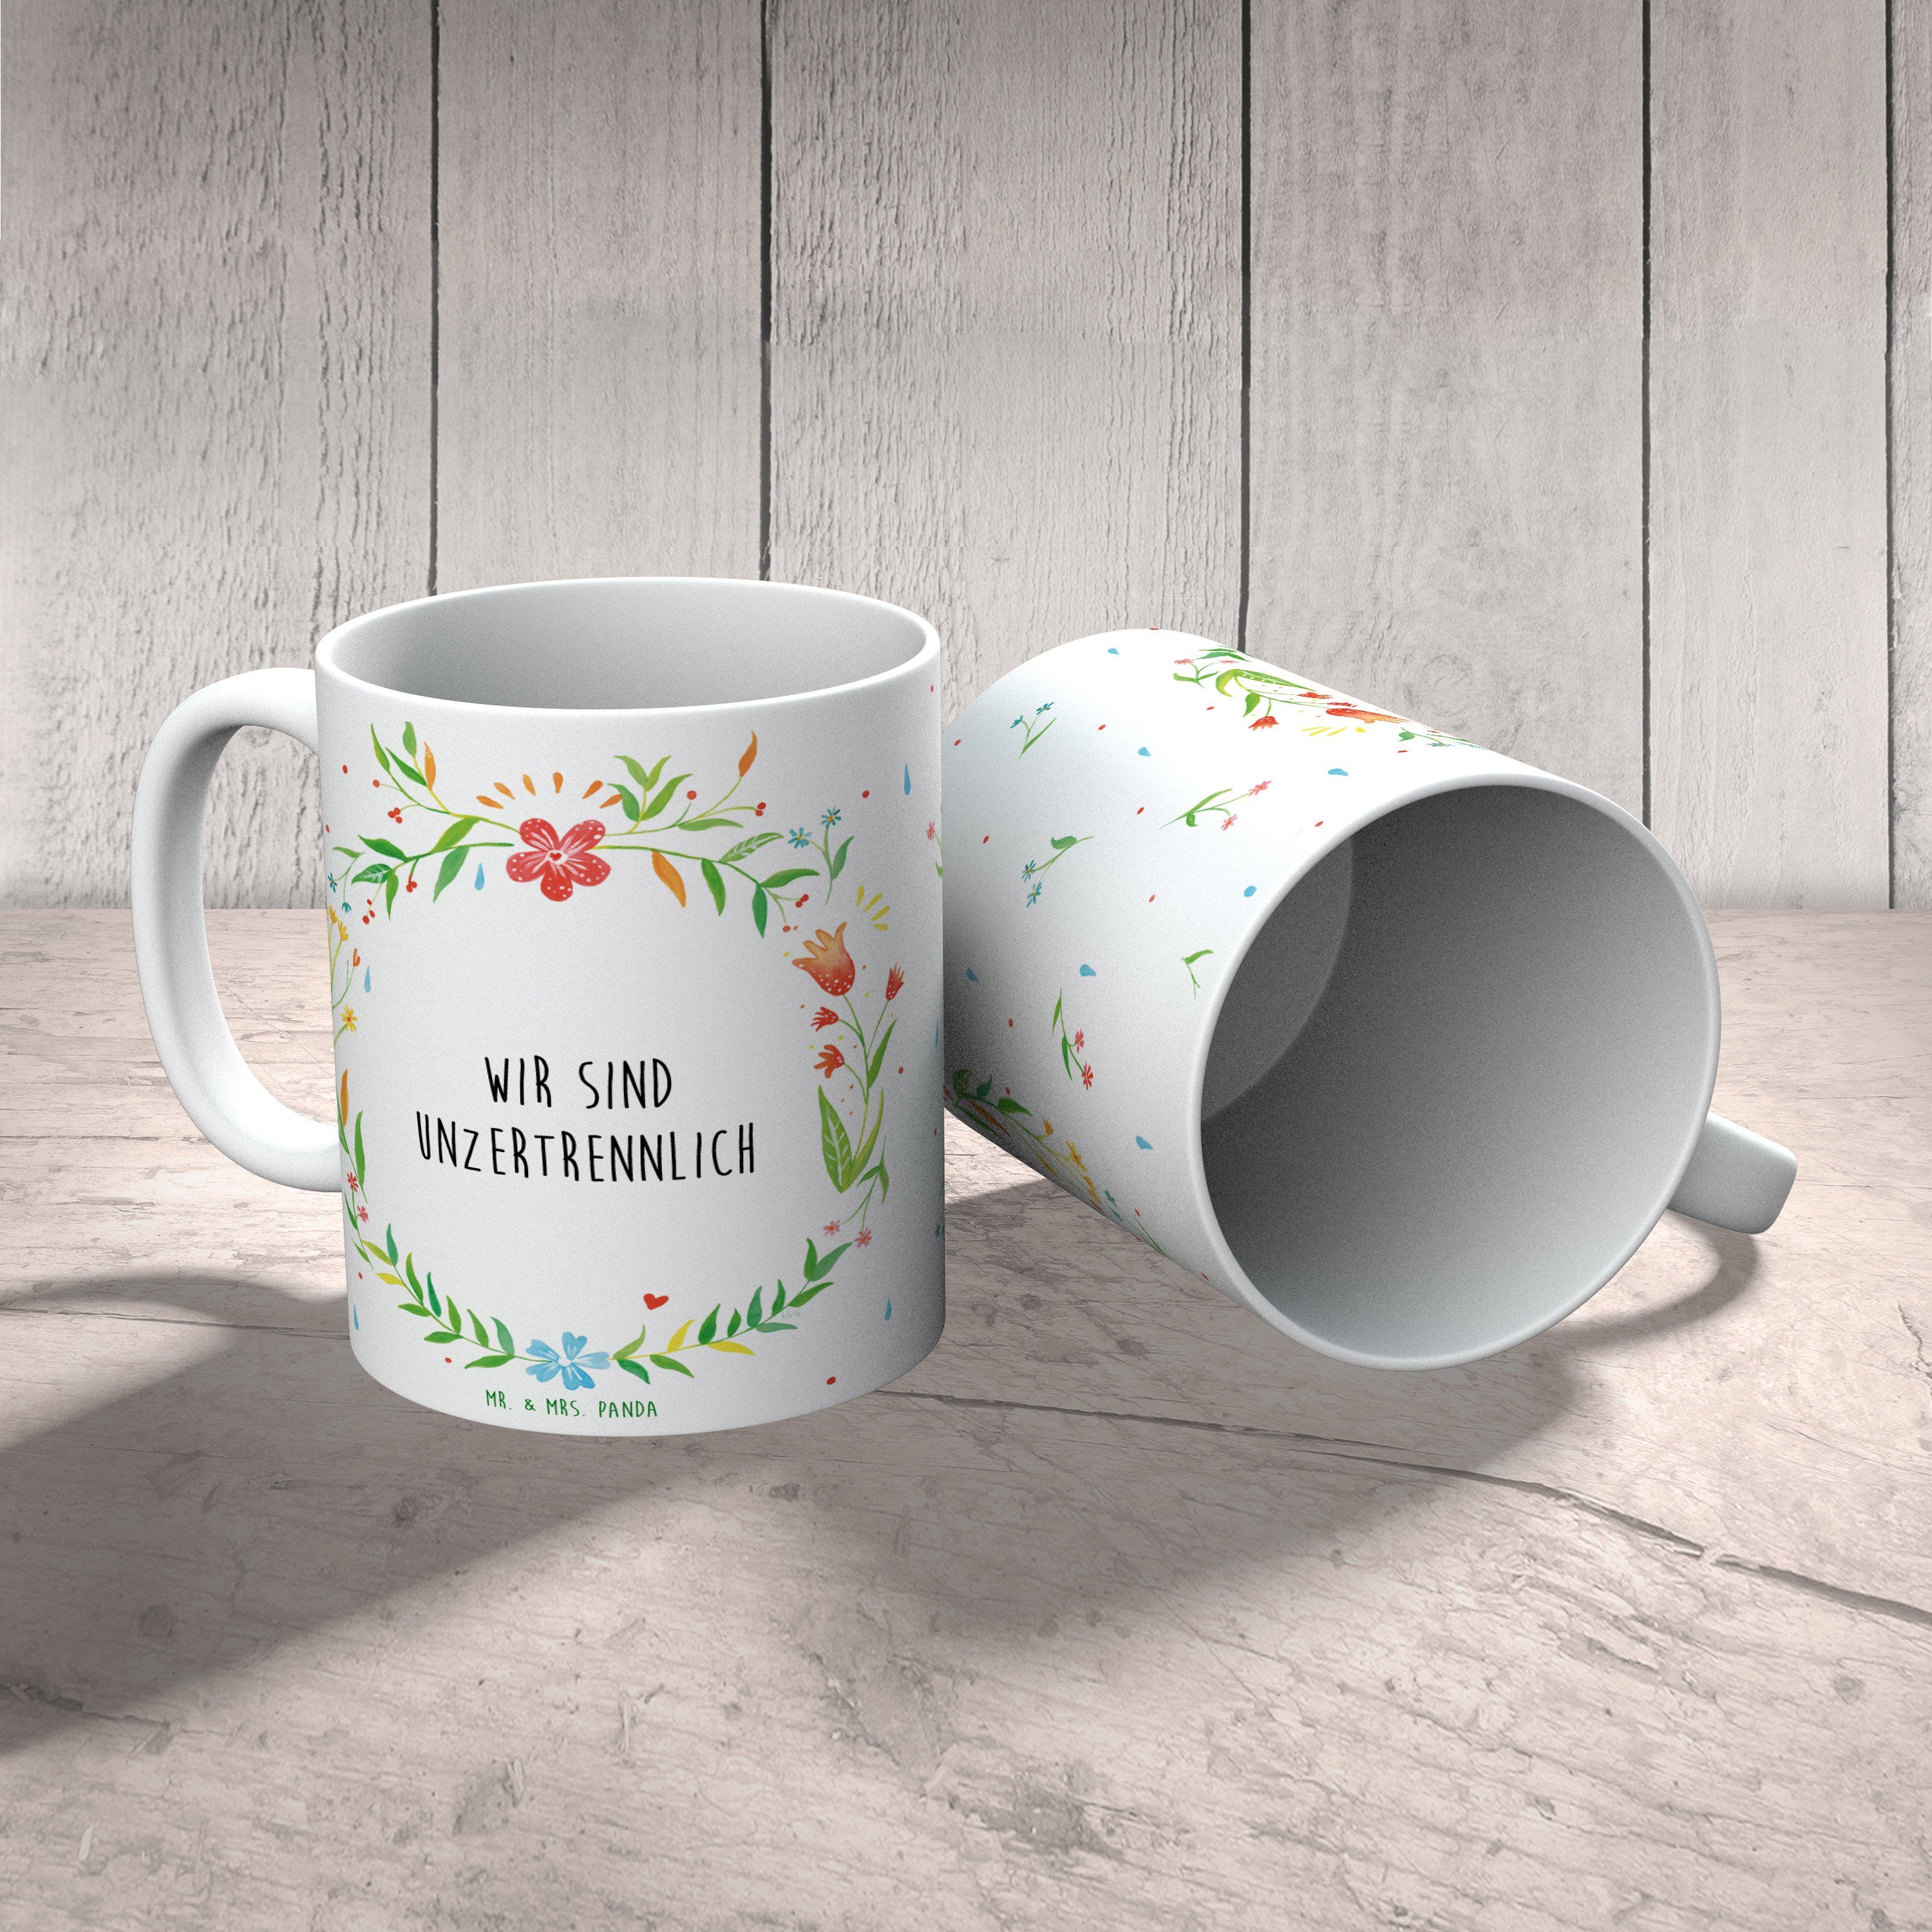 Mr. & Mrs. Panda Tasse - Wir T, Becher, unzertrennlich Geschenk, Keramik sind Tasse Teetasse, Motive